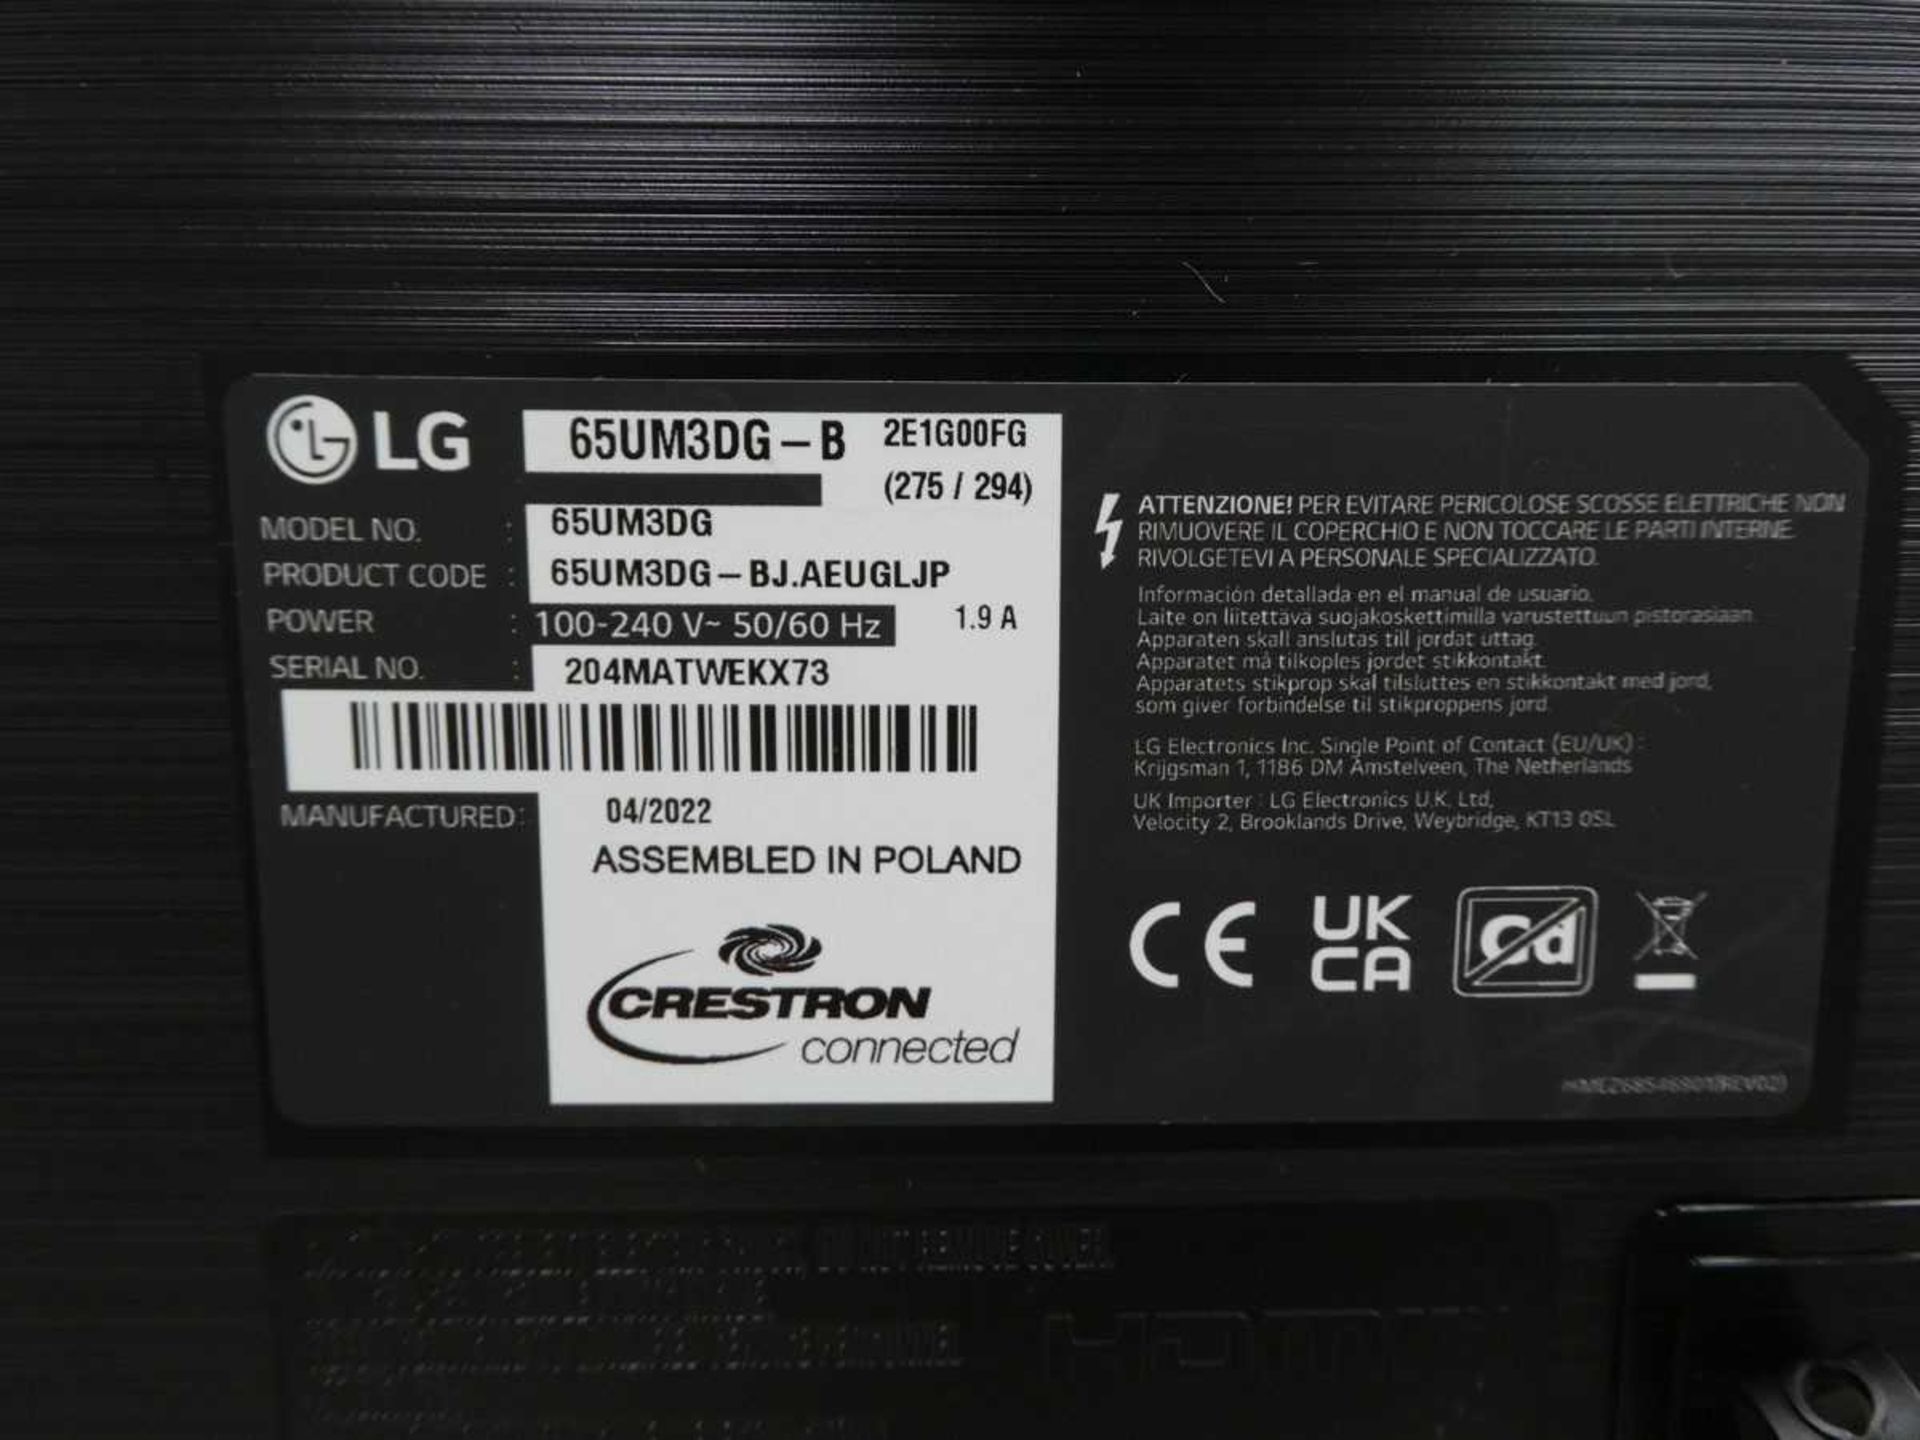 LG Model 65UM3DG 65" Digital Signage Display 4K UHD LED Monitor with detachable remote sensor, - Image 3 of 9